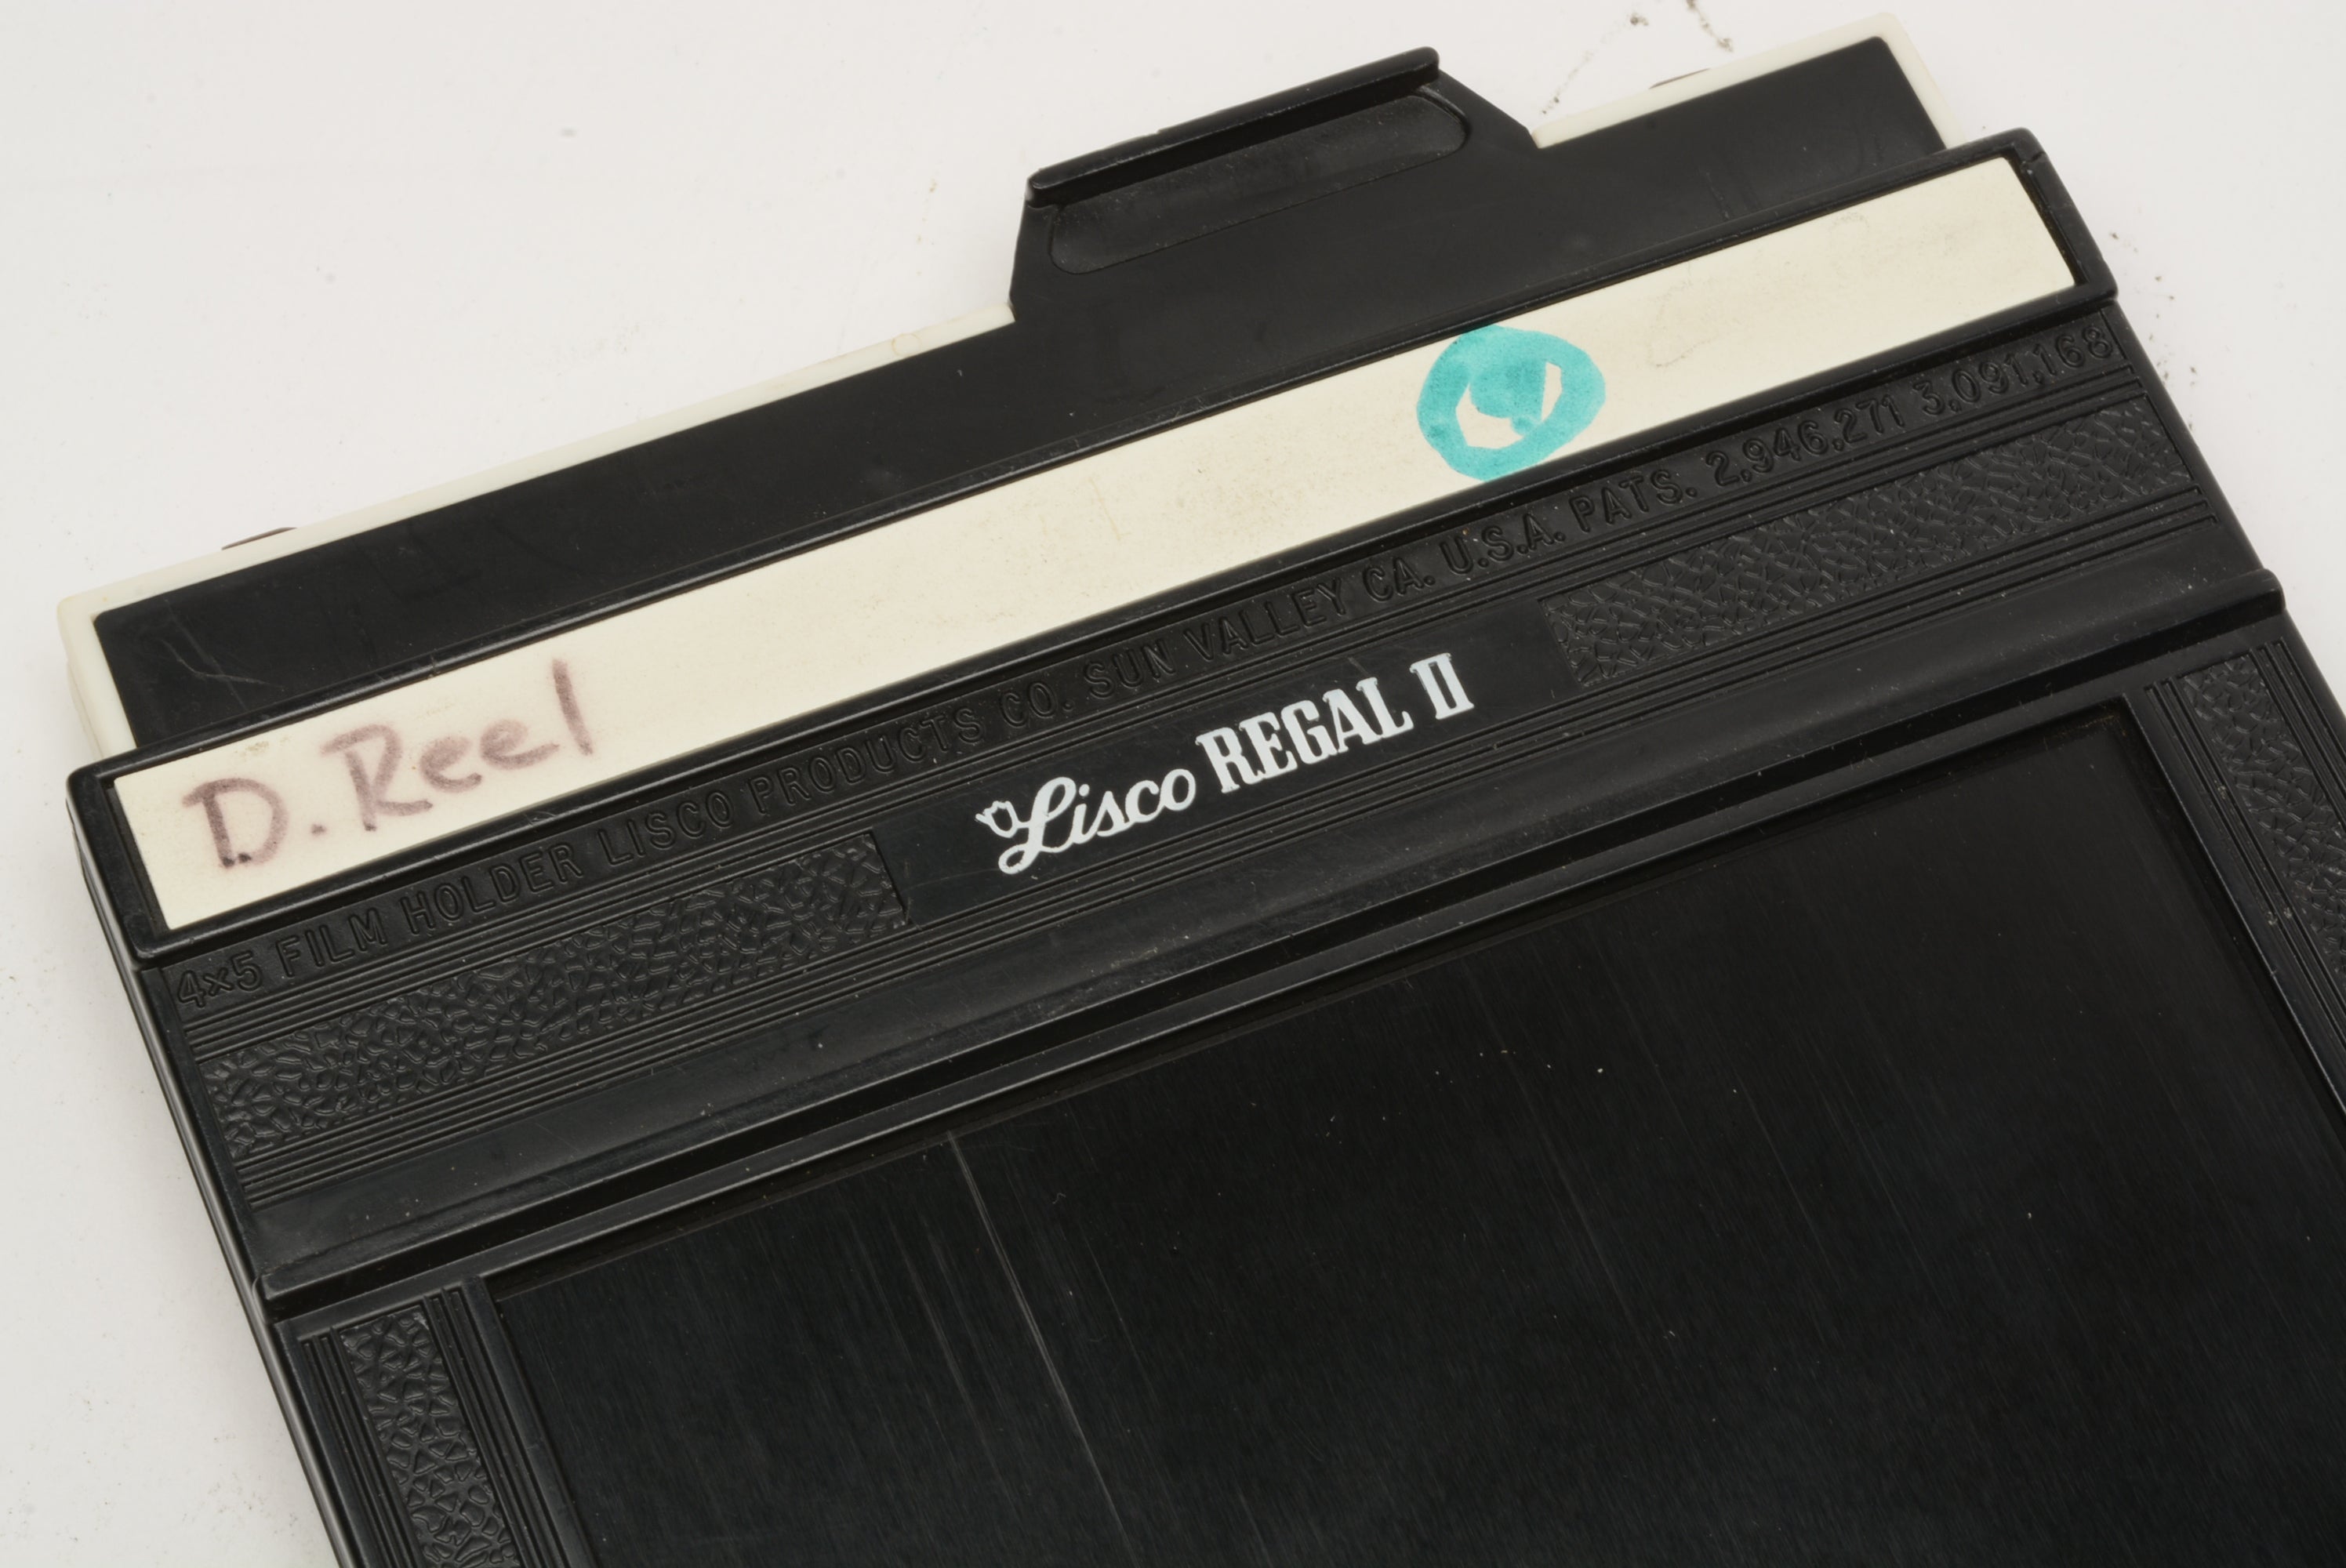 Lisco Regal II 4x5 sheet film holder, nice & clean w/Dark slides